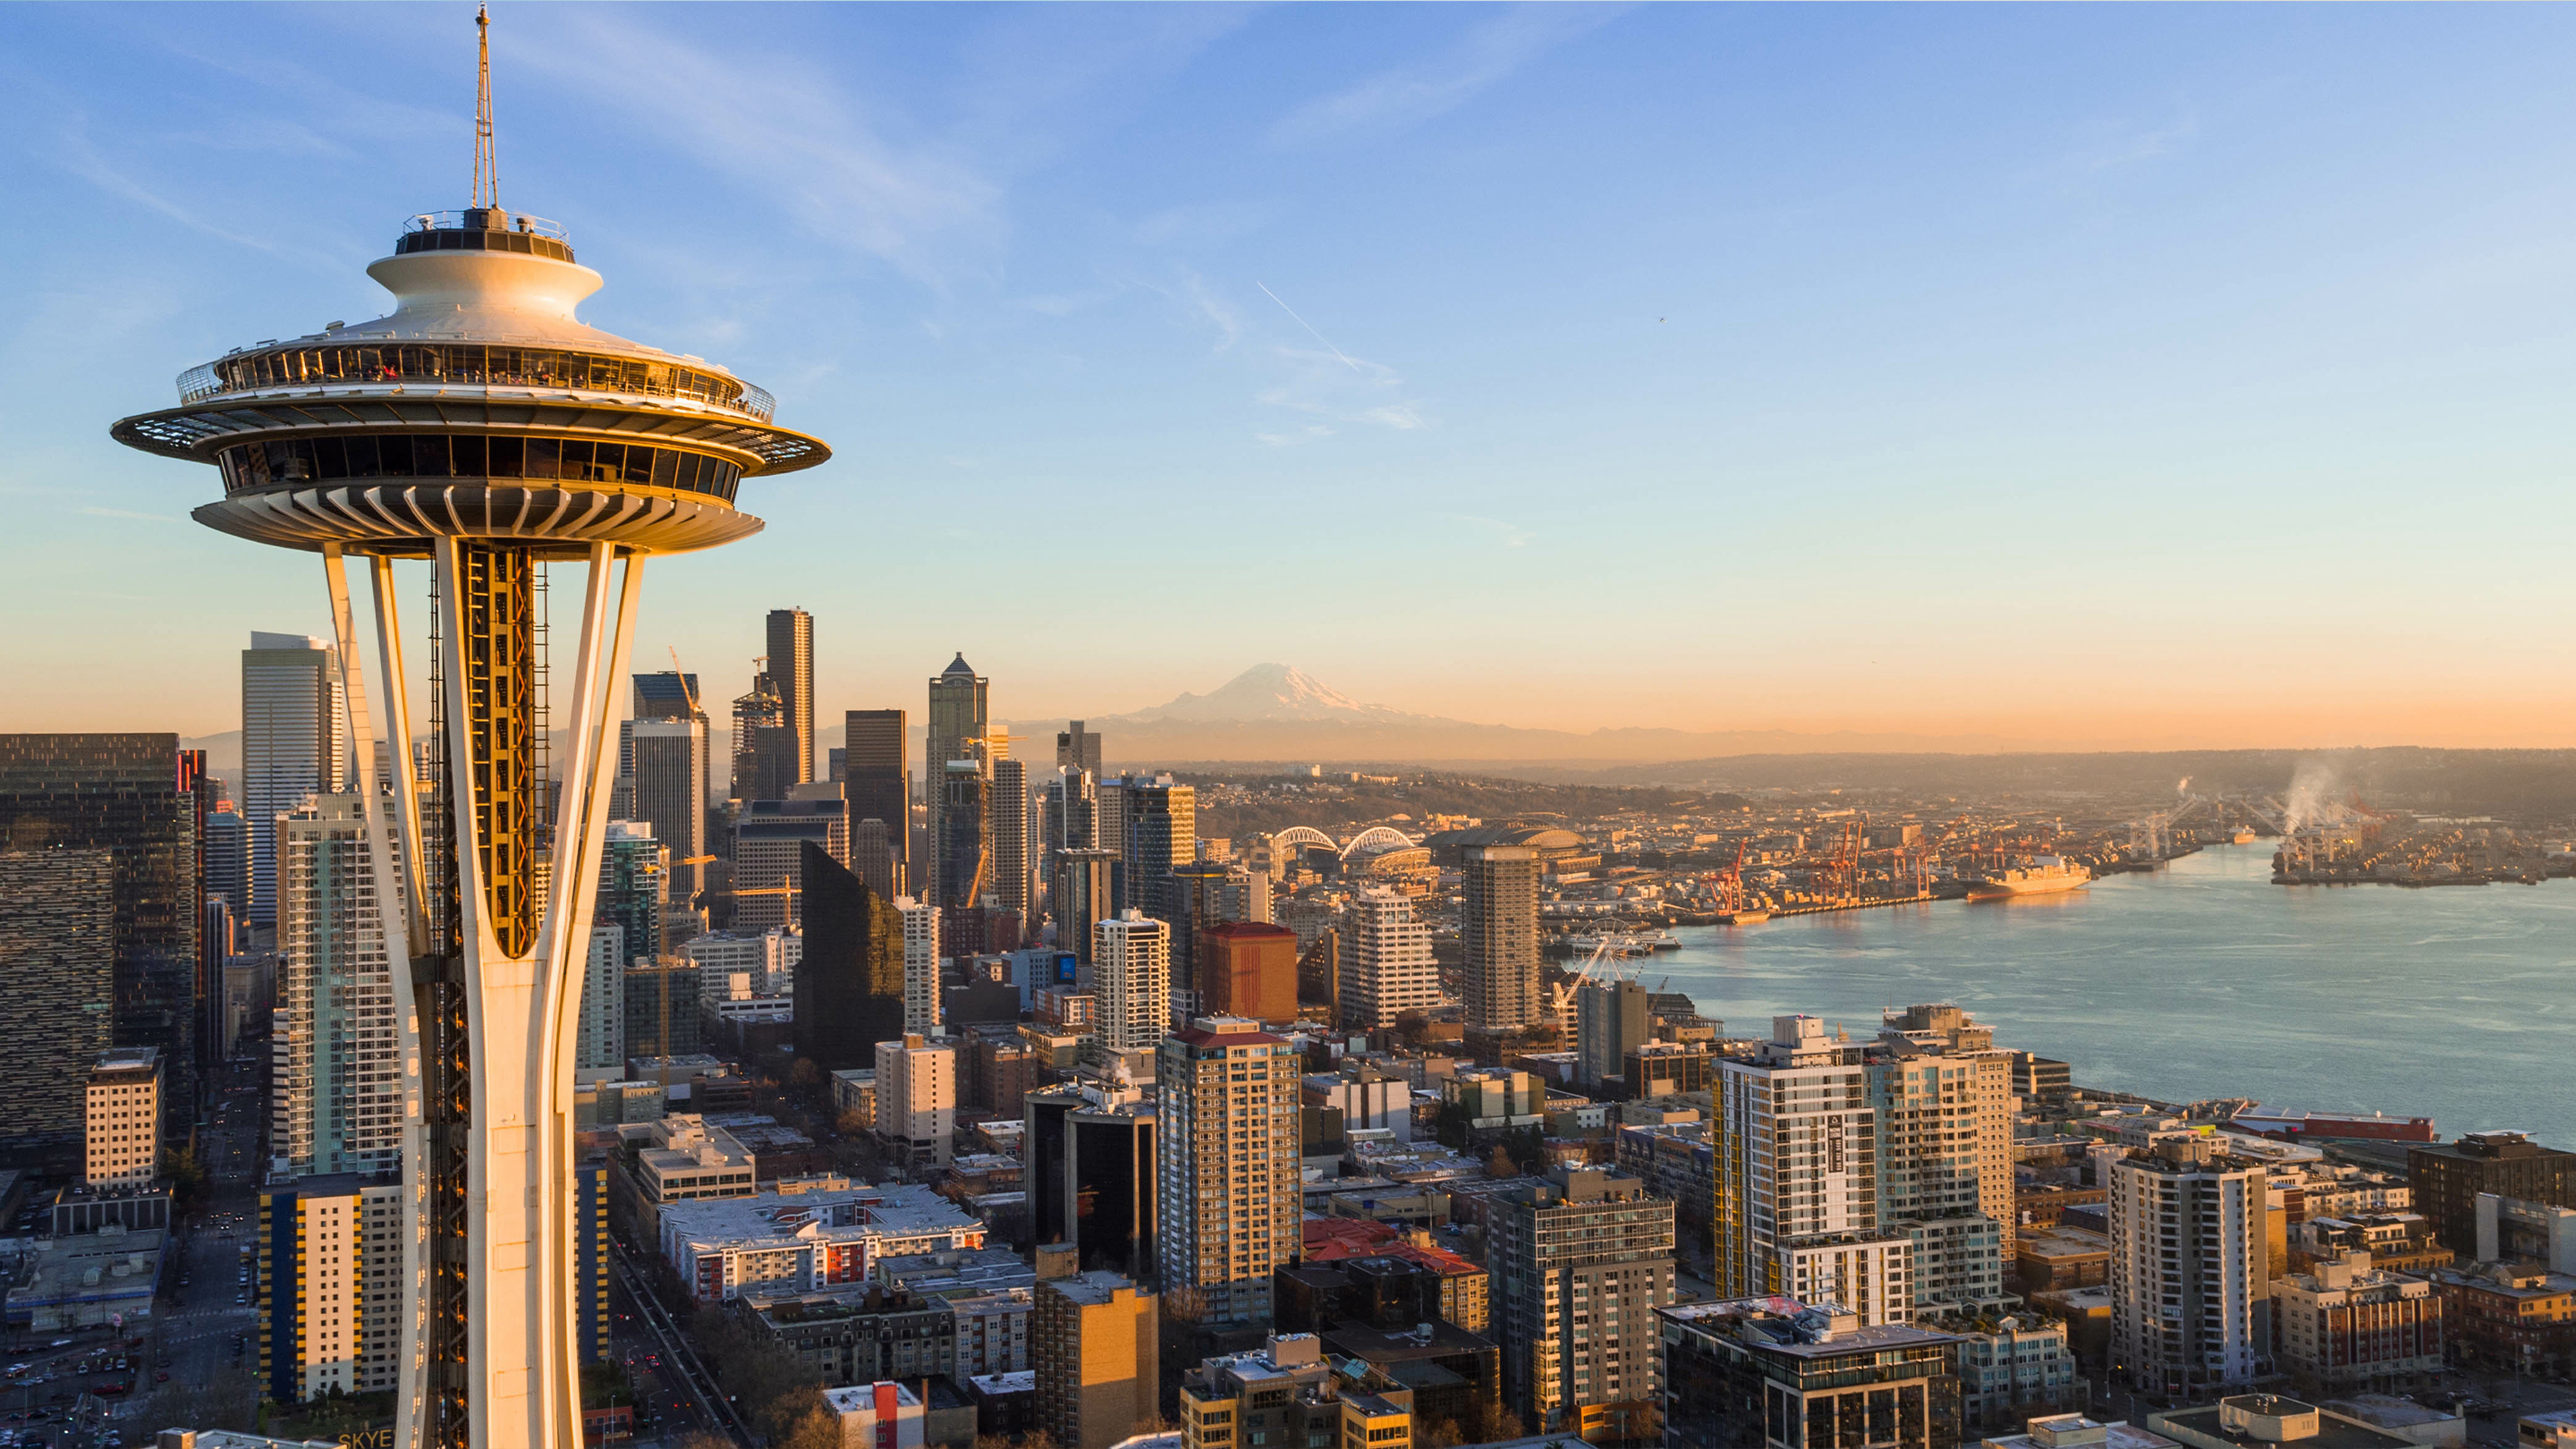 Légi felvétel a washingtoni Seattle városáról, a Space Needle toronnyal az előtérben.